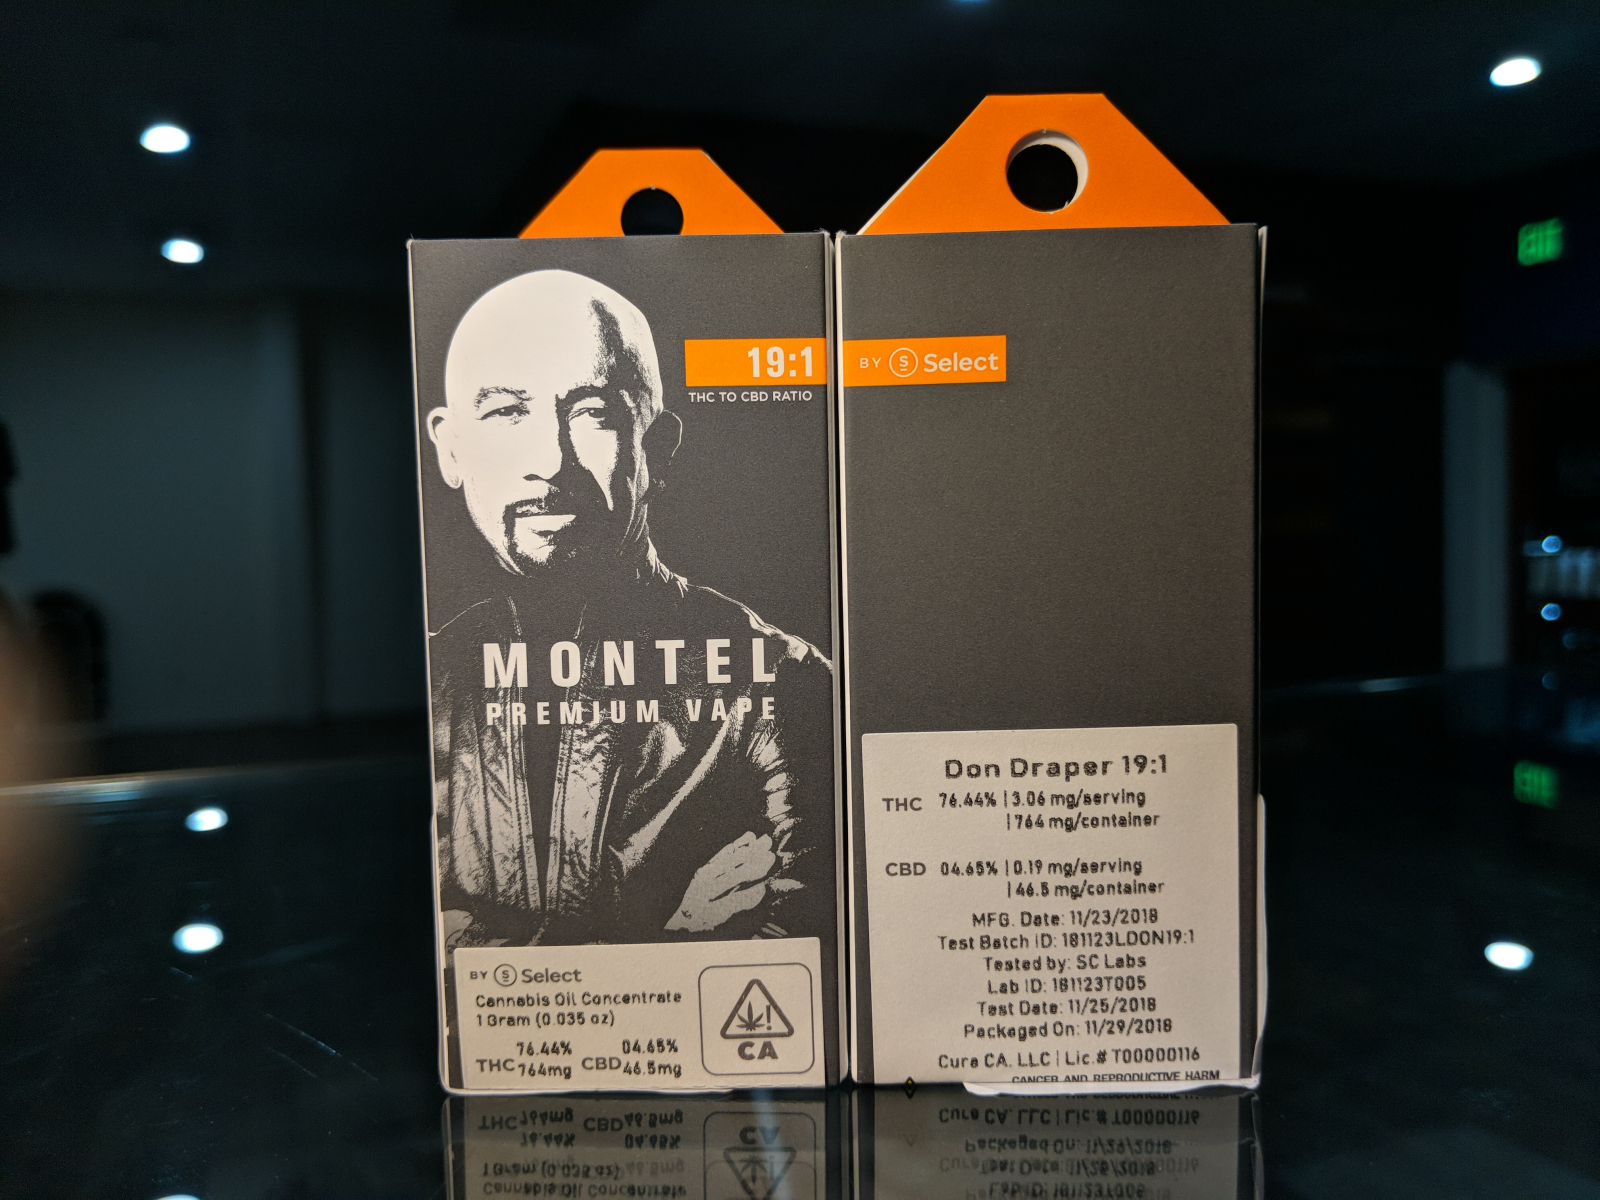 Montel 19:1 full gram THC cartridge